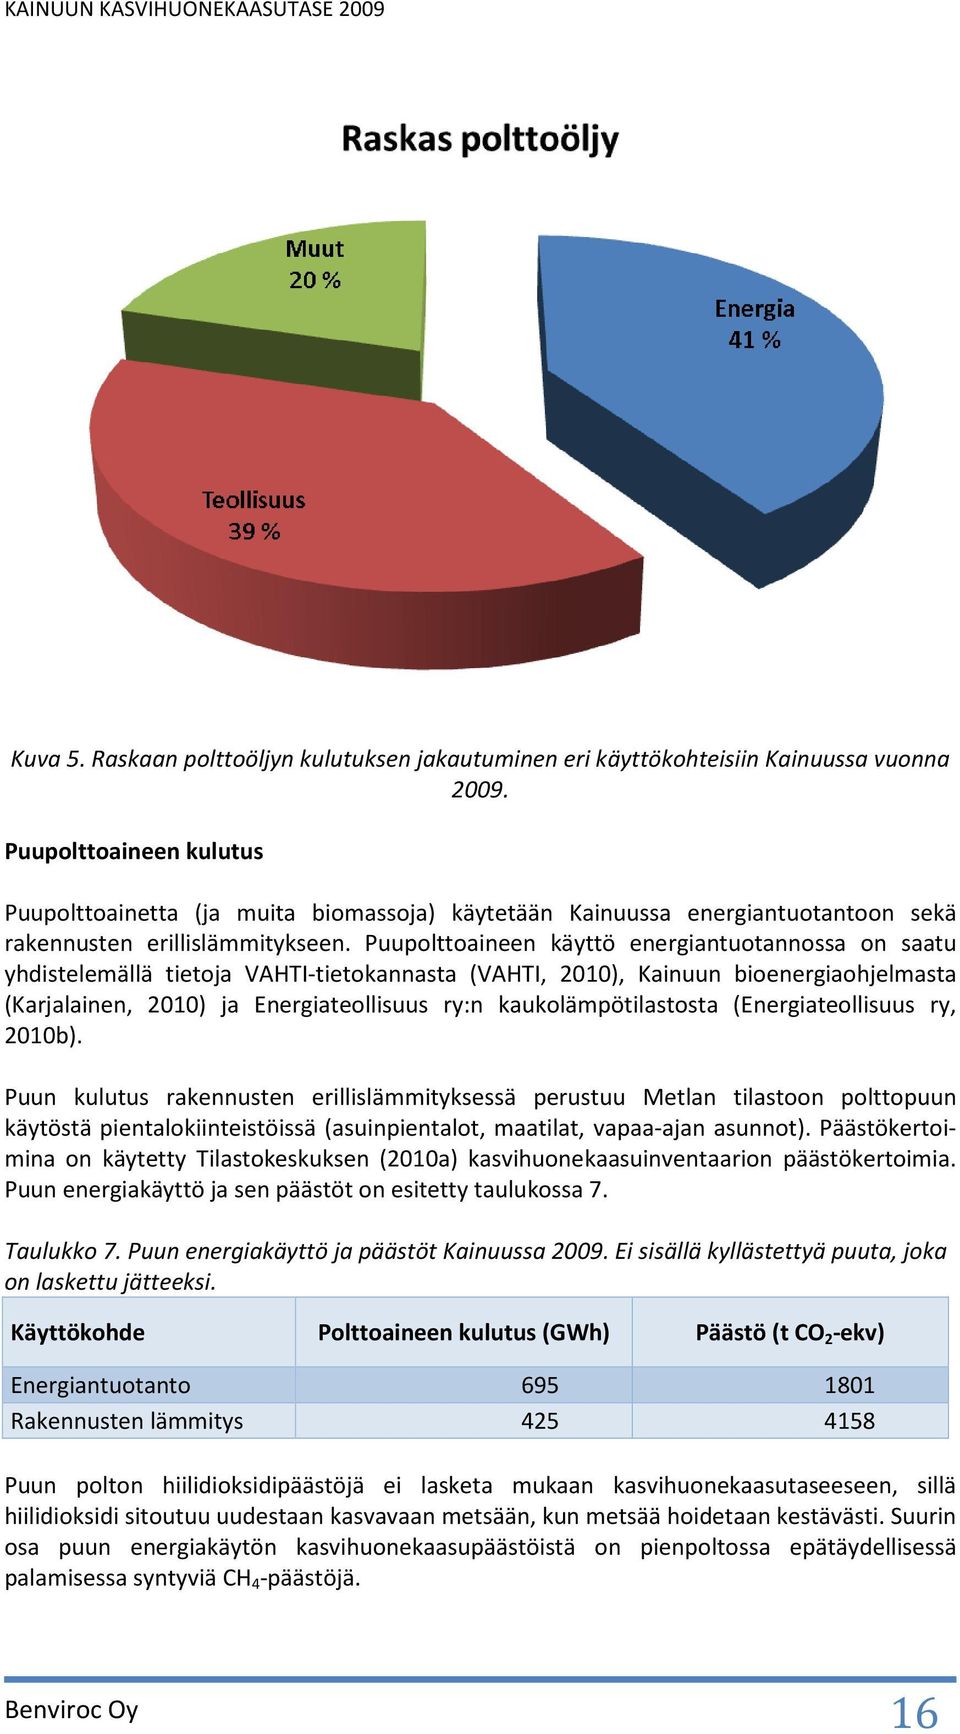 Puupolttoaineen käyttö energiantuotannossa on saatu yhdistelemällä tietoja VAHTI-tietokannasta (VAHTI, 2010), Kainuun bioenergiaohjelmasta (Karjalainen, 2010) ja Energiateollisuus ry:n